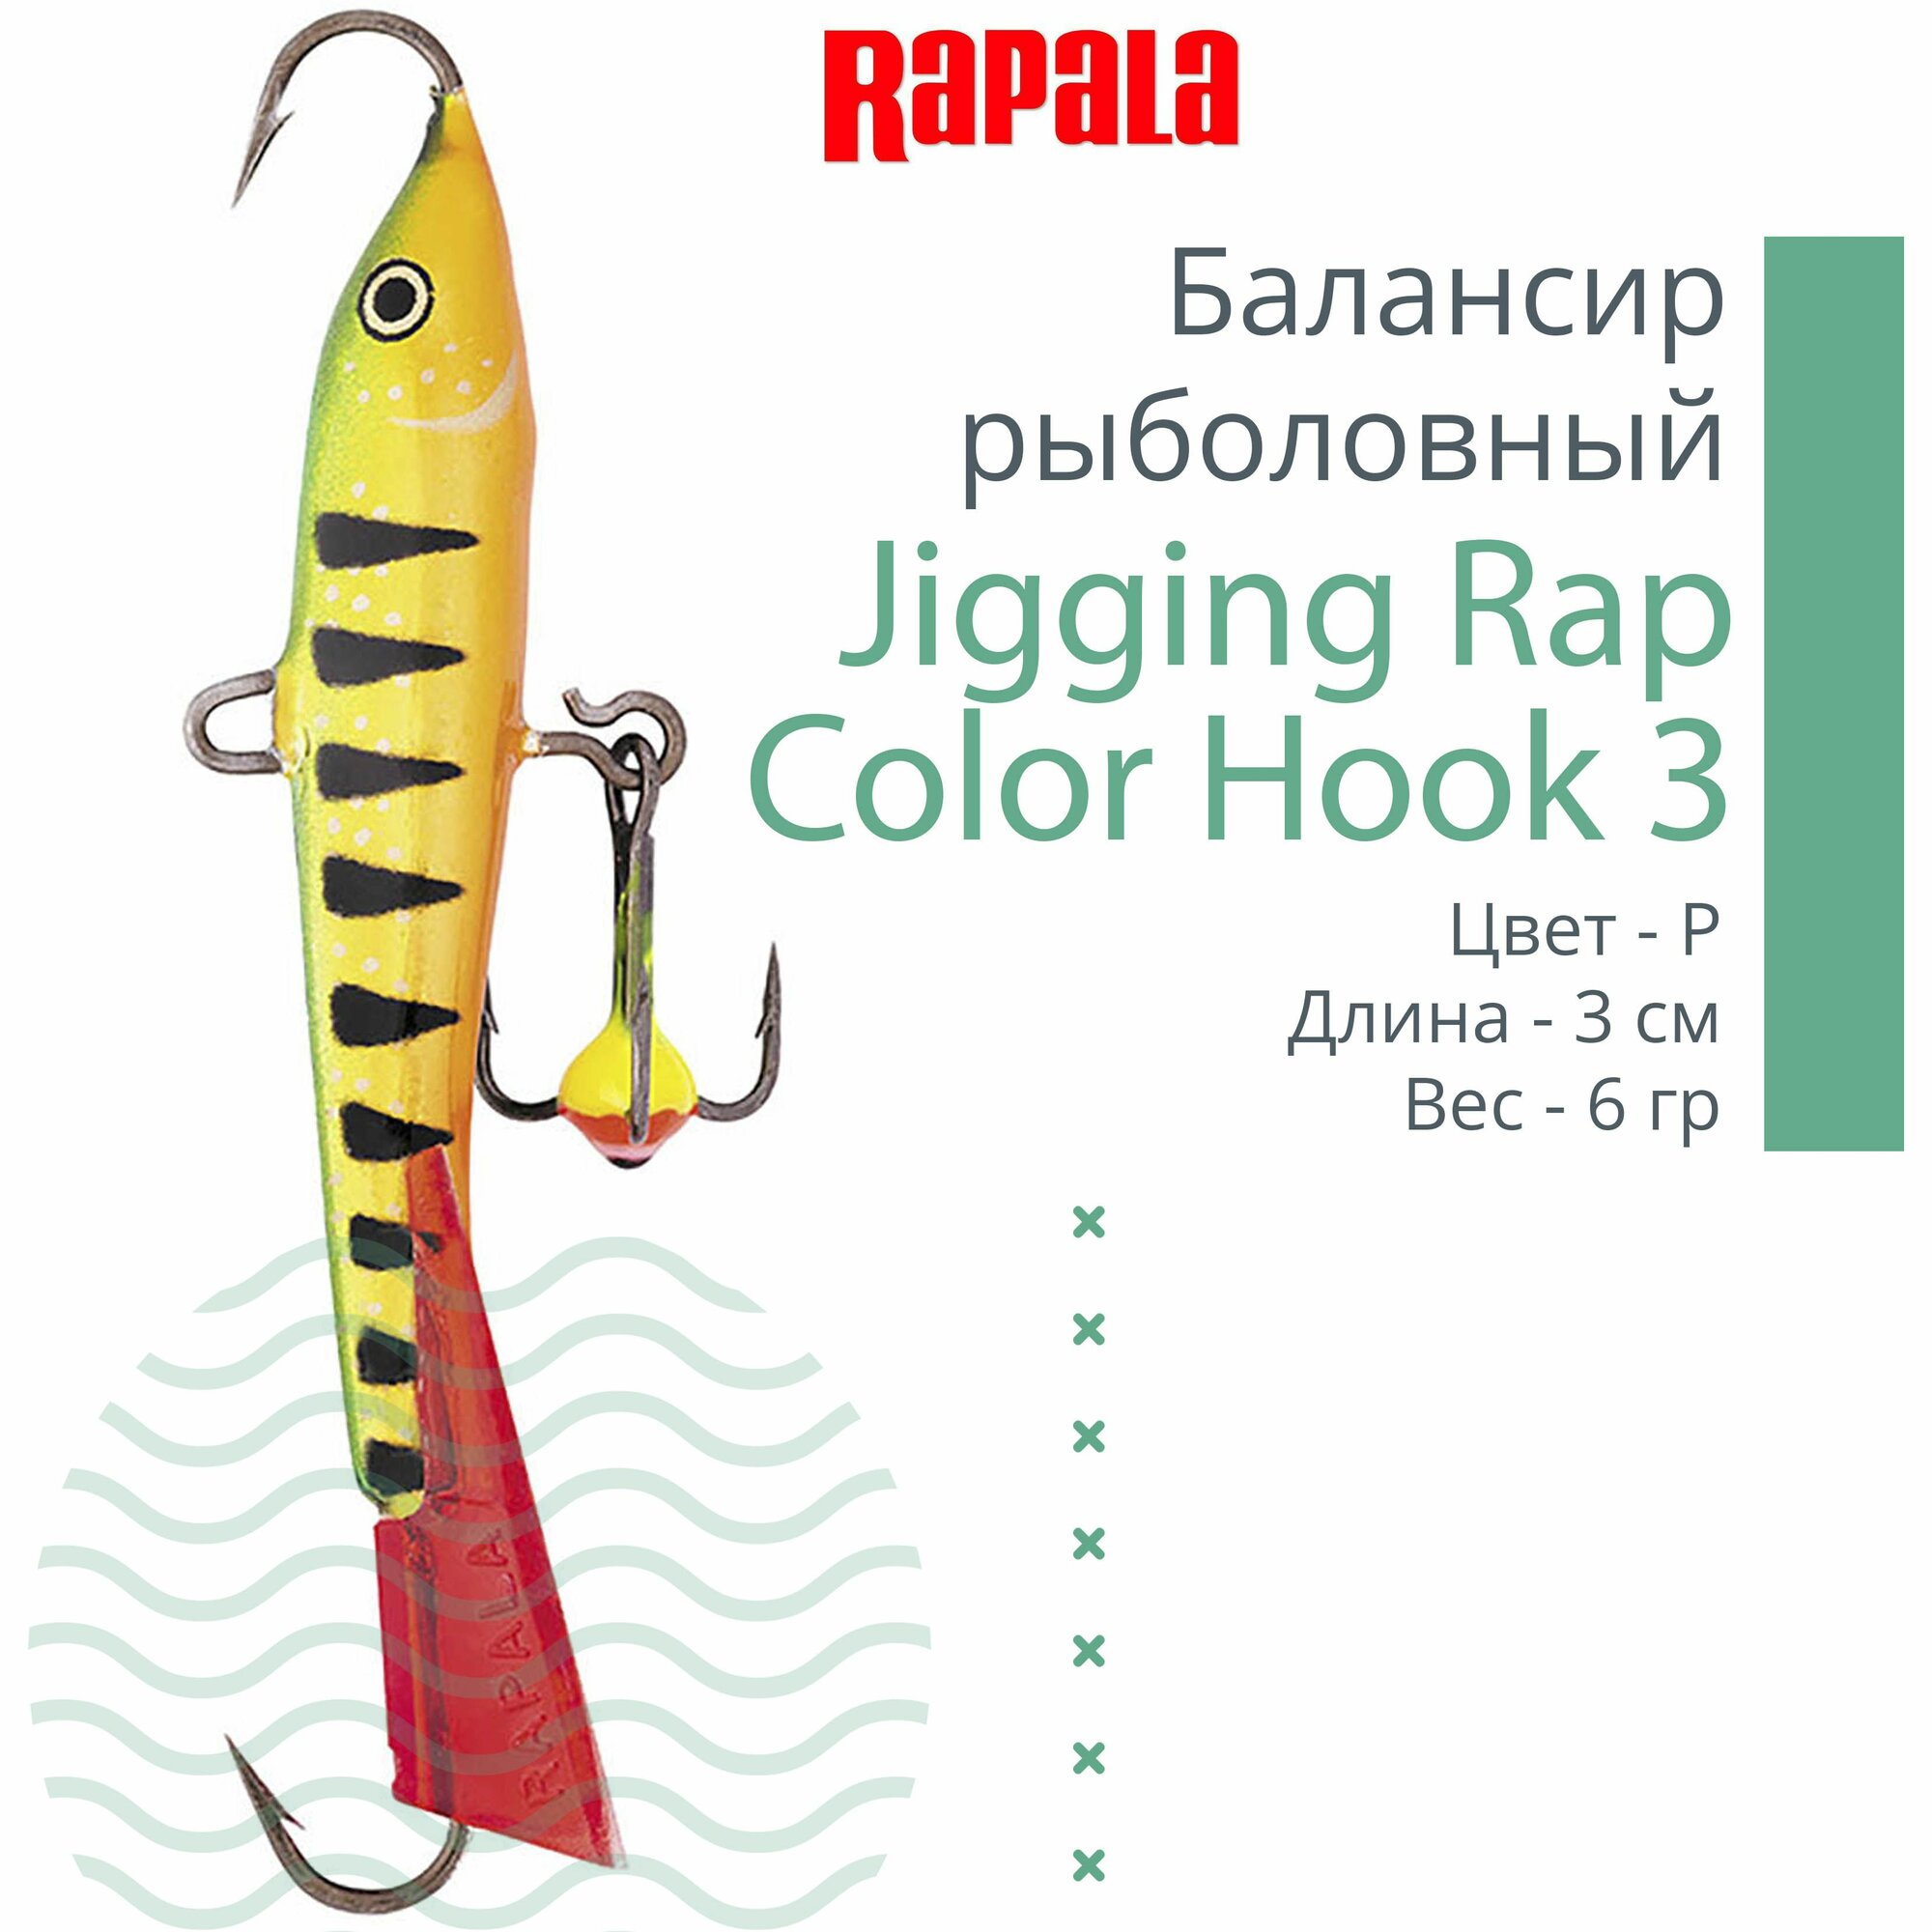 Балансир для зимней рыбалки Rapala Jigging Rap Color Hook 3 /P